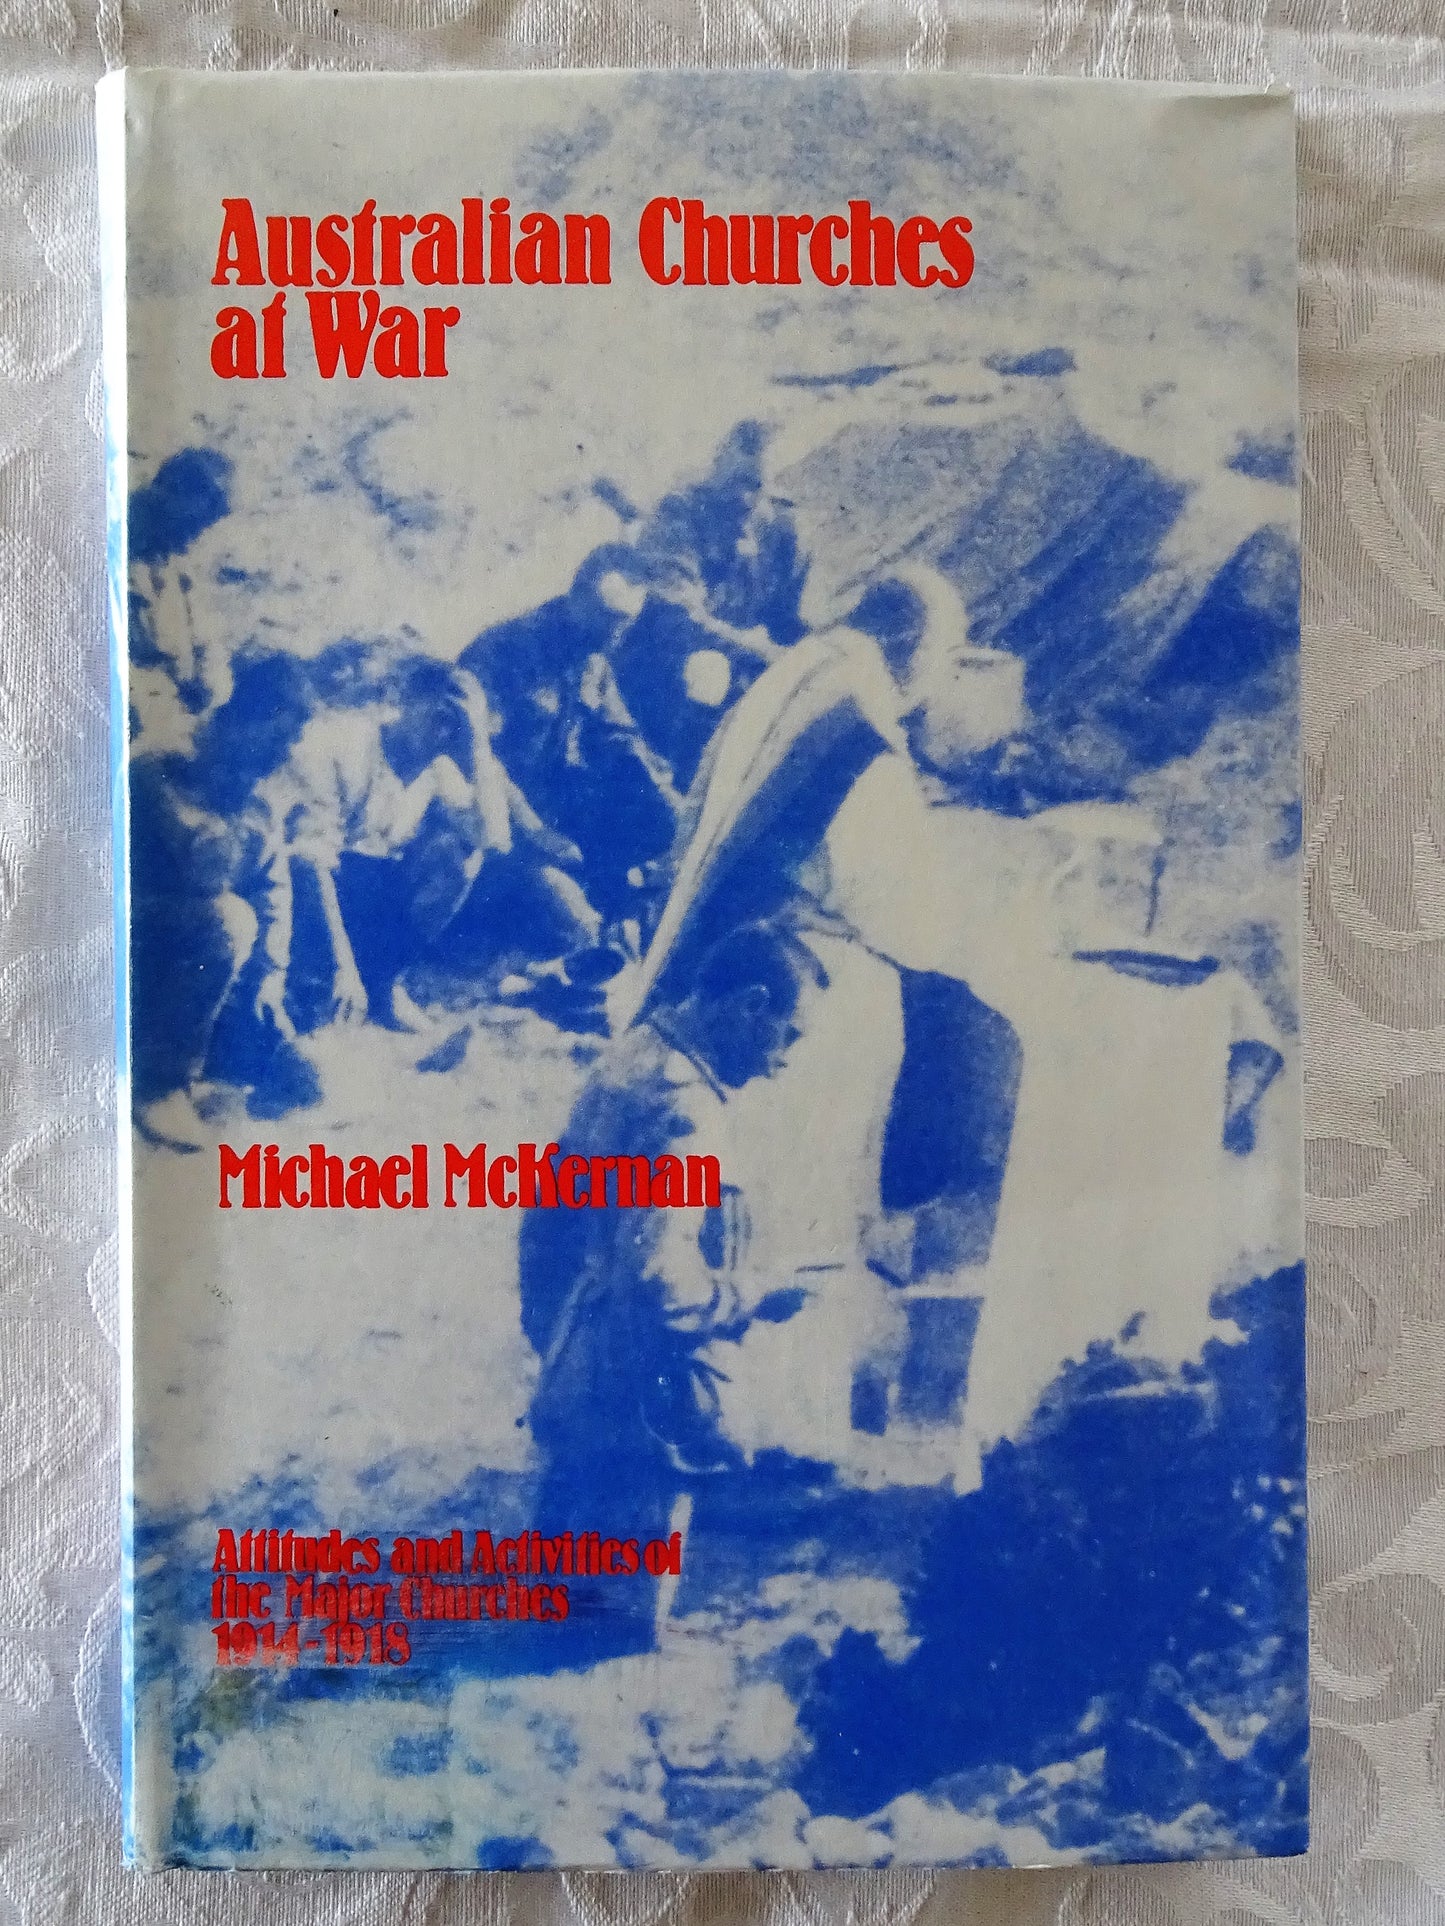 Australian Churches at War by Michael McKernan